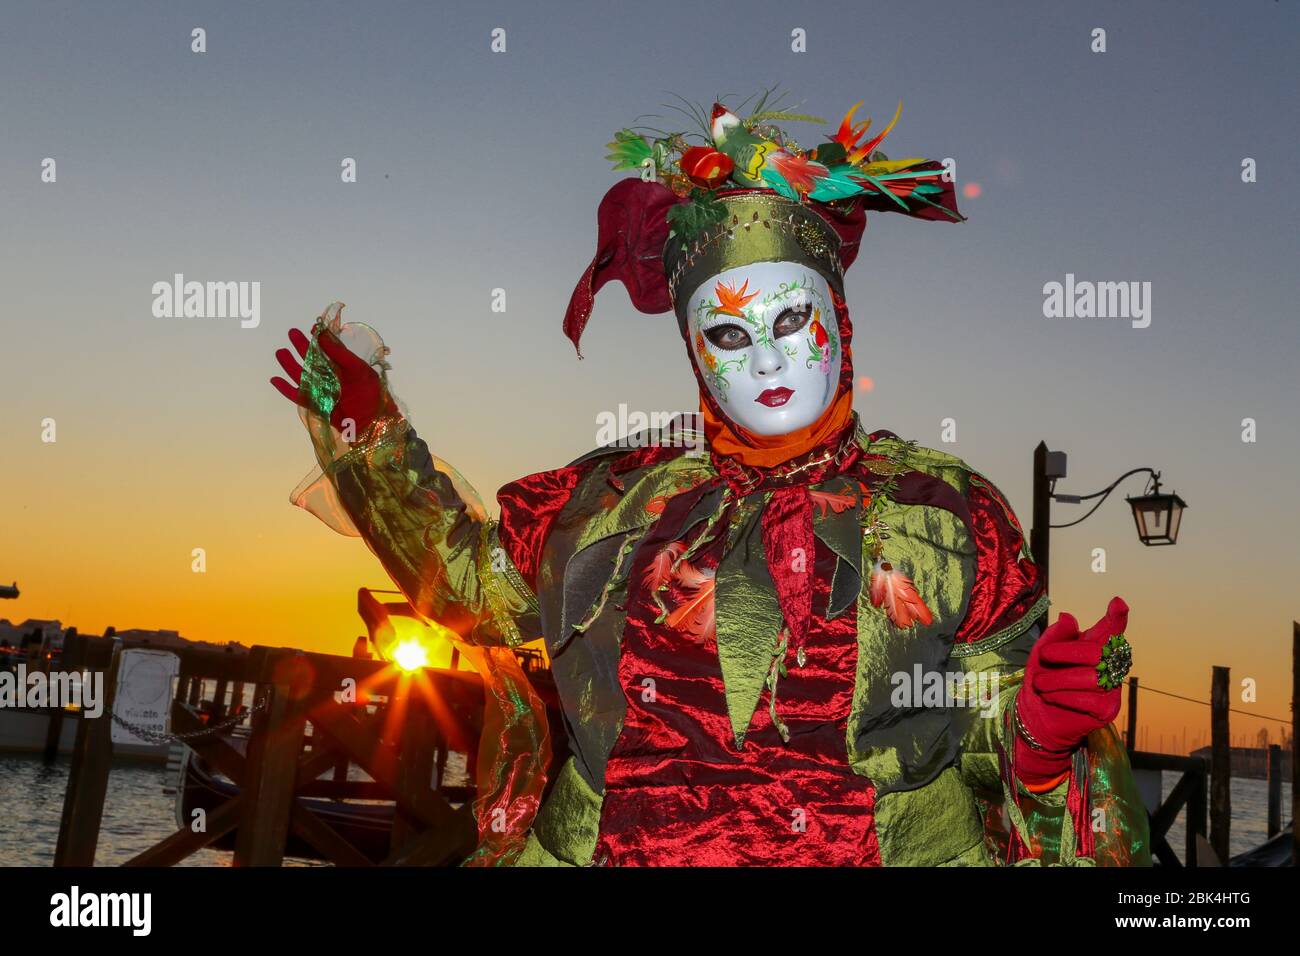 Venedig, Italien-februar 21.2020: Der Karneval in Venedig war sehr schön mit Schaufensterpuppen, die bei Sonnenaufgang mit bunten Jeans posierten, kurz vor der Corona pande Stockfoto